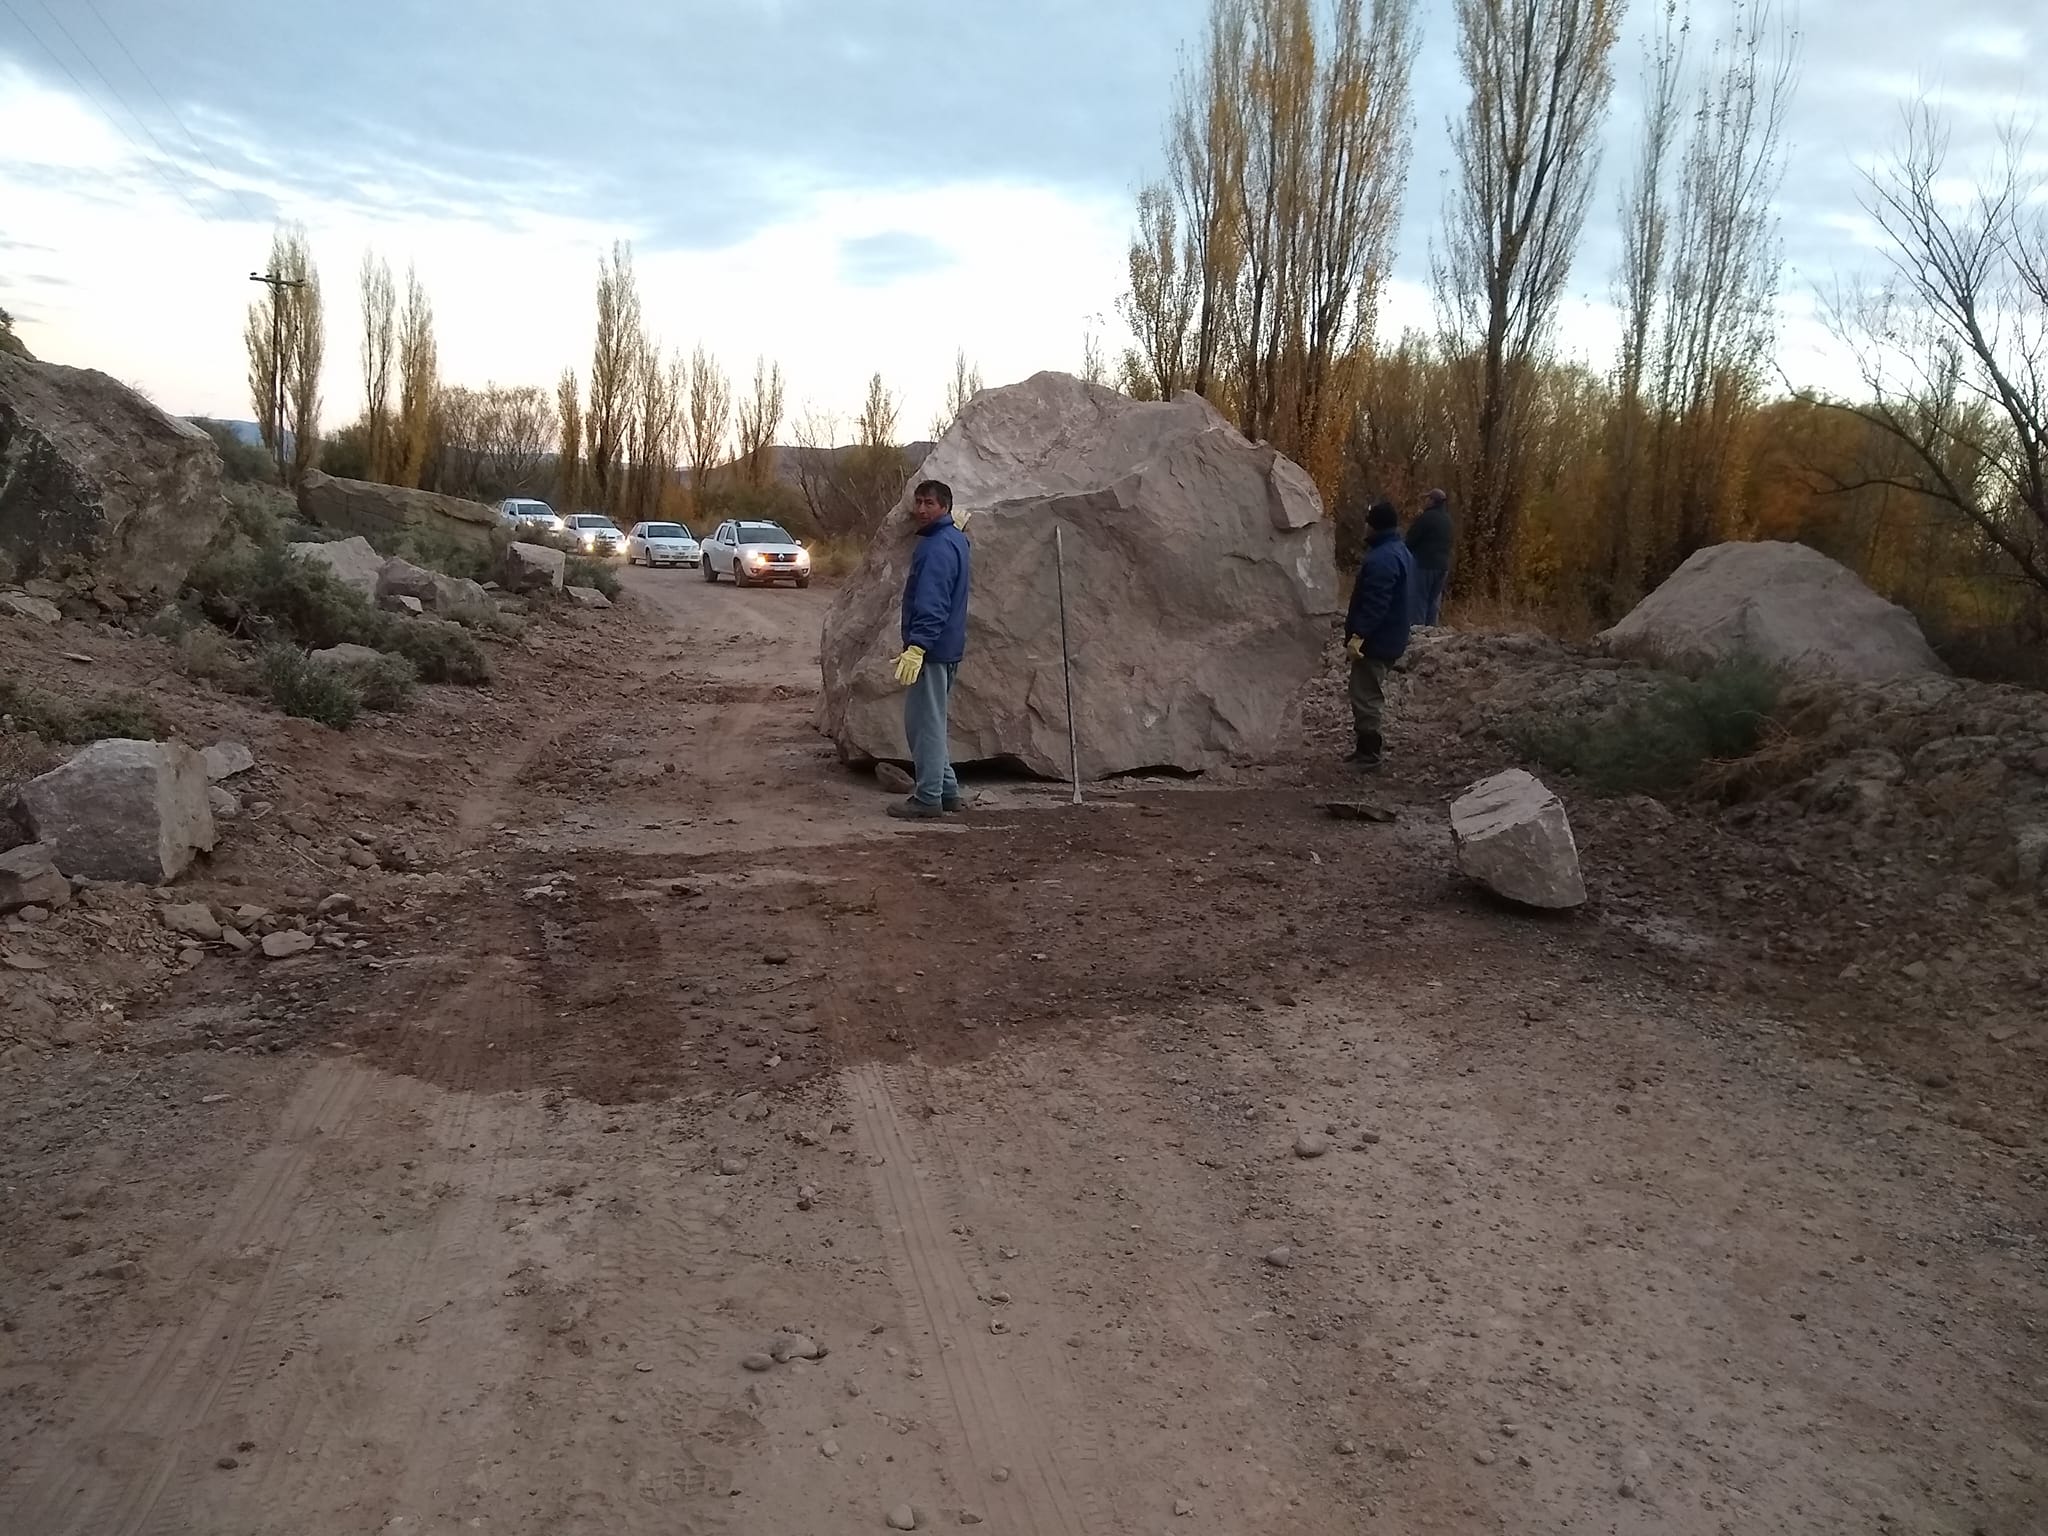 La salida a Bajada del Agrio se vio bloqueada por las enormes rocas. Foto: 6ladosnoticias.